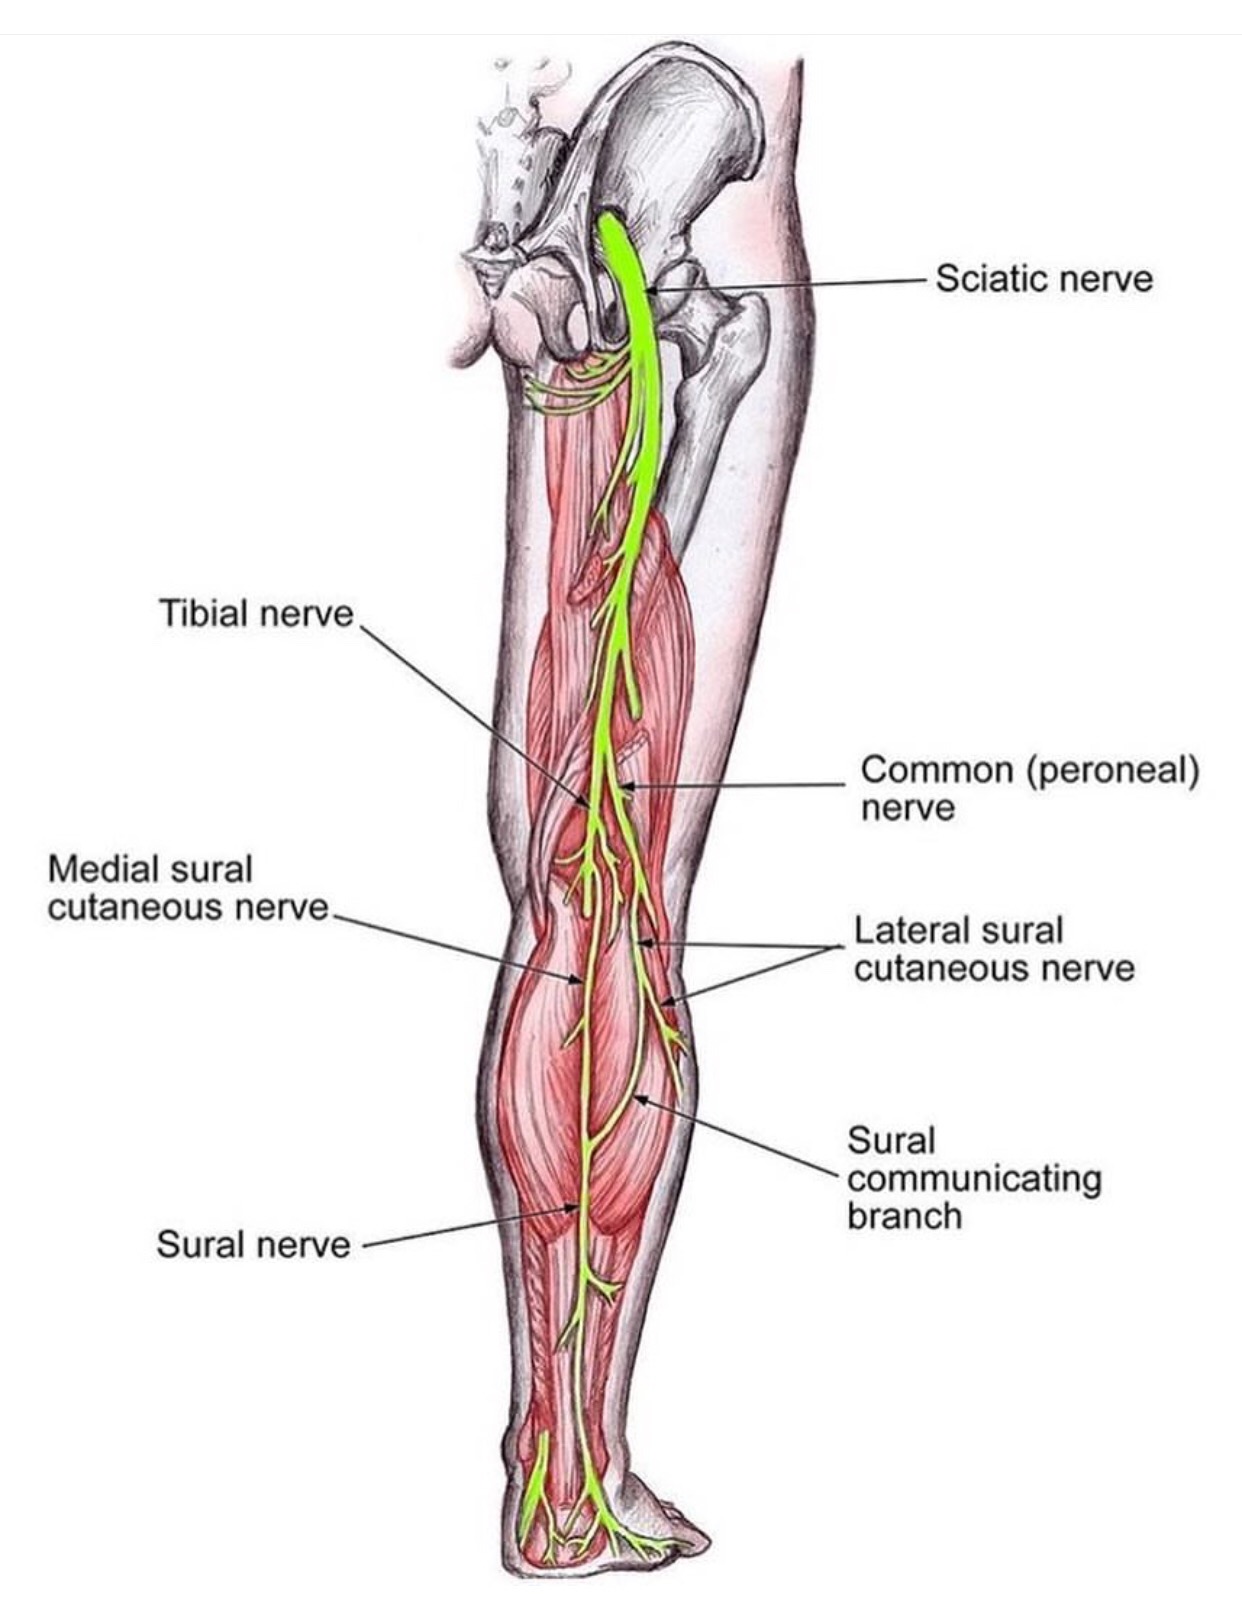 N suralis. Большеберцовый нерв анатомия иннервация. Суралис нерв анатомия. N. Tibialis – большеберцовый нерв. Икроножный нерв анатомия.